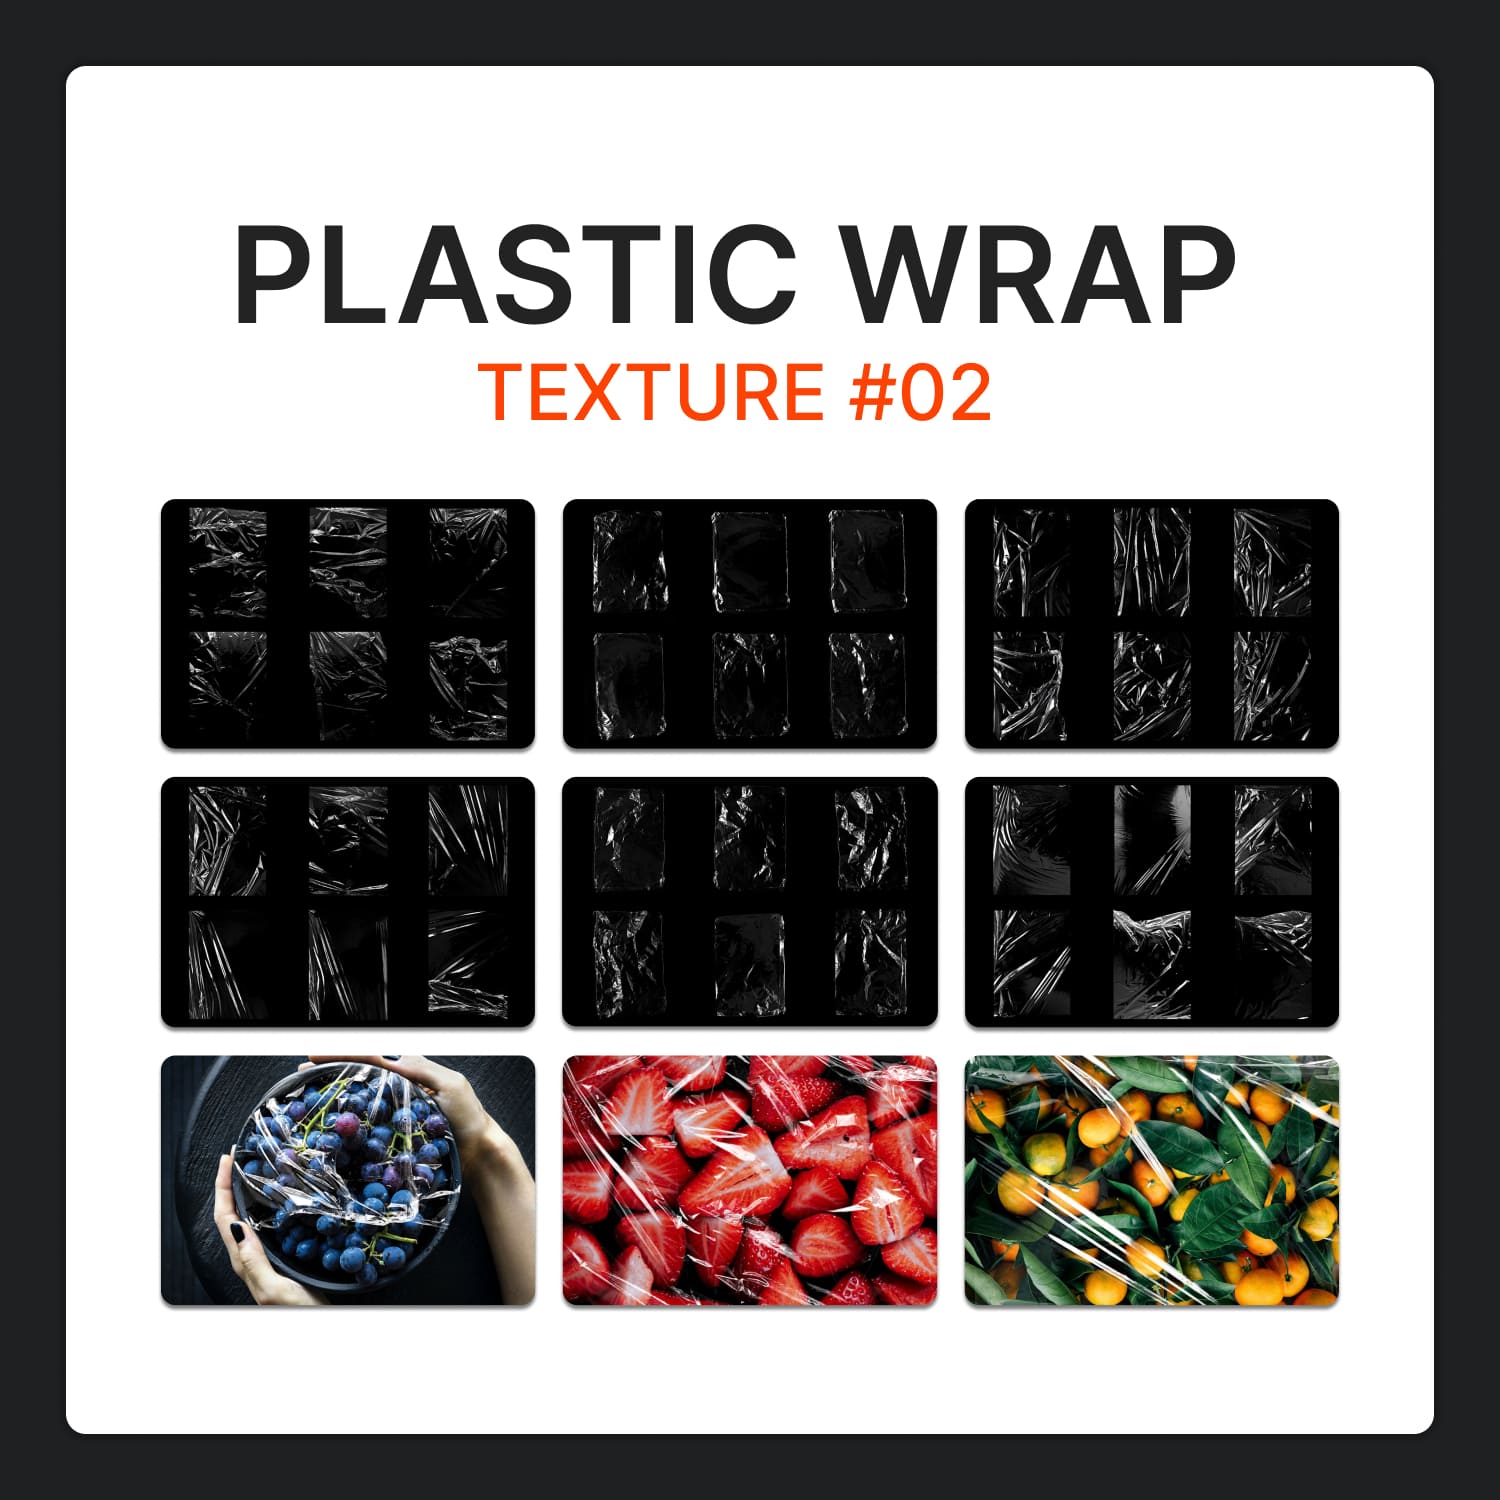 Plastic wrap texture 02 - main image preview.